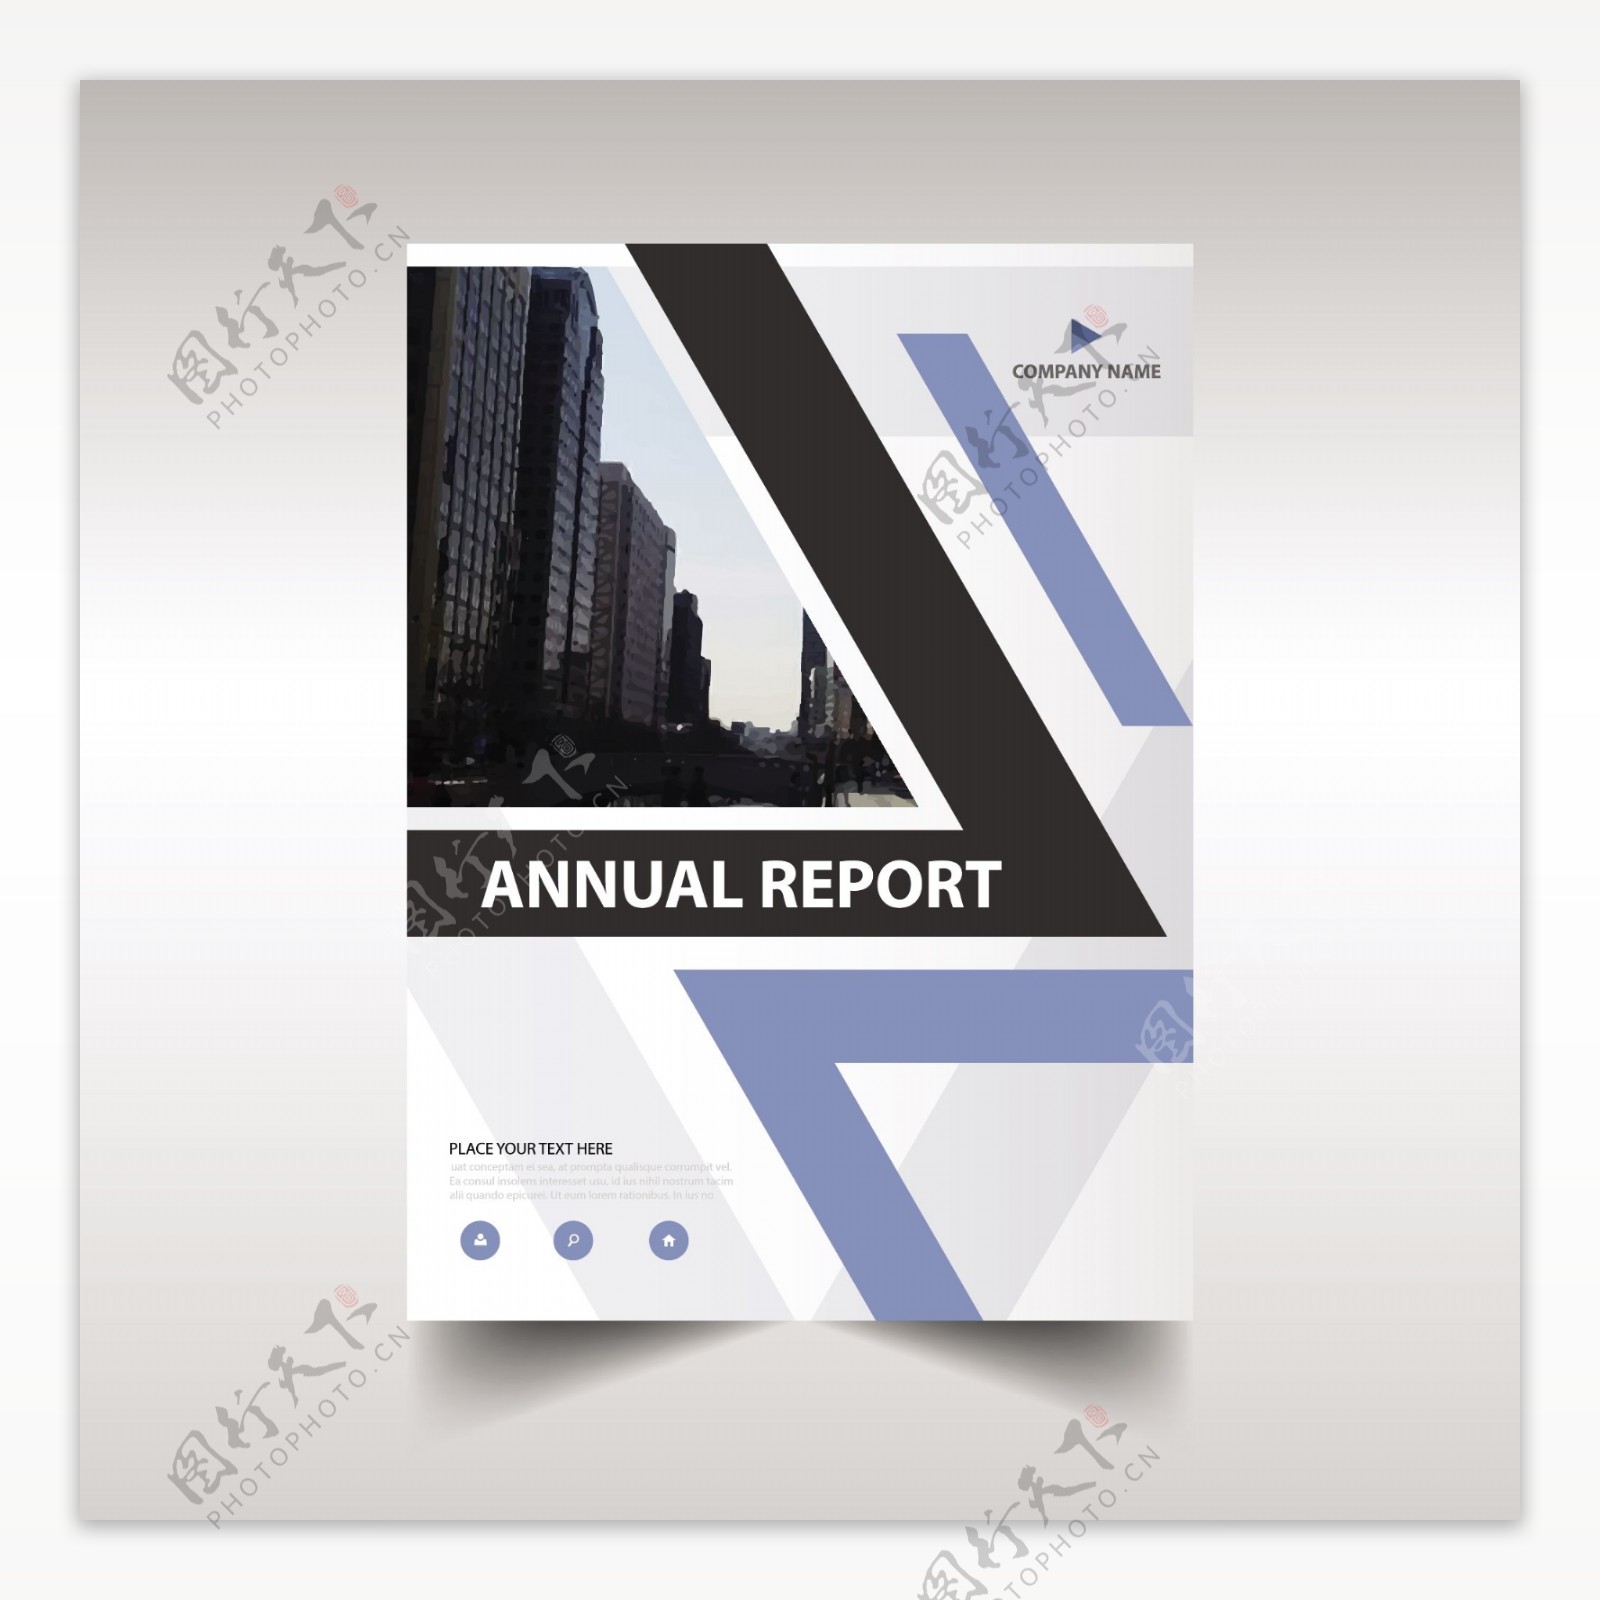 优雅的企业年度报告设计